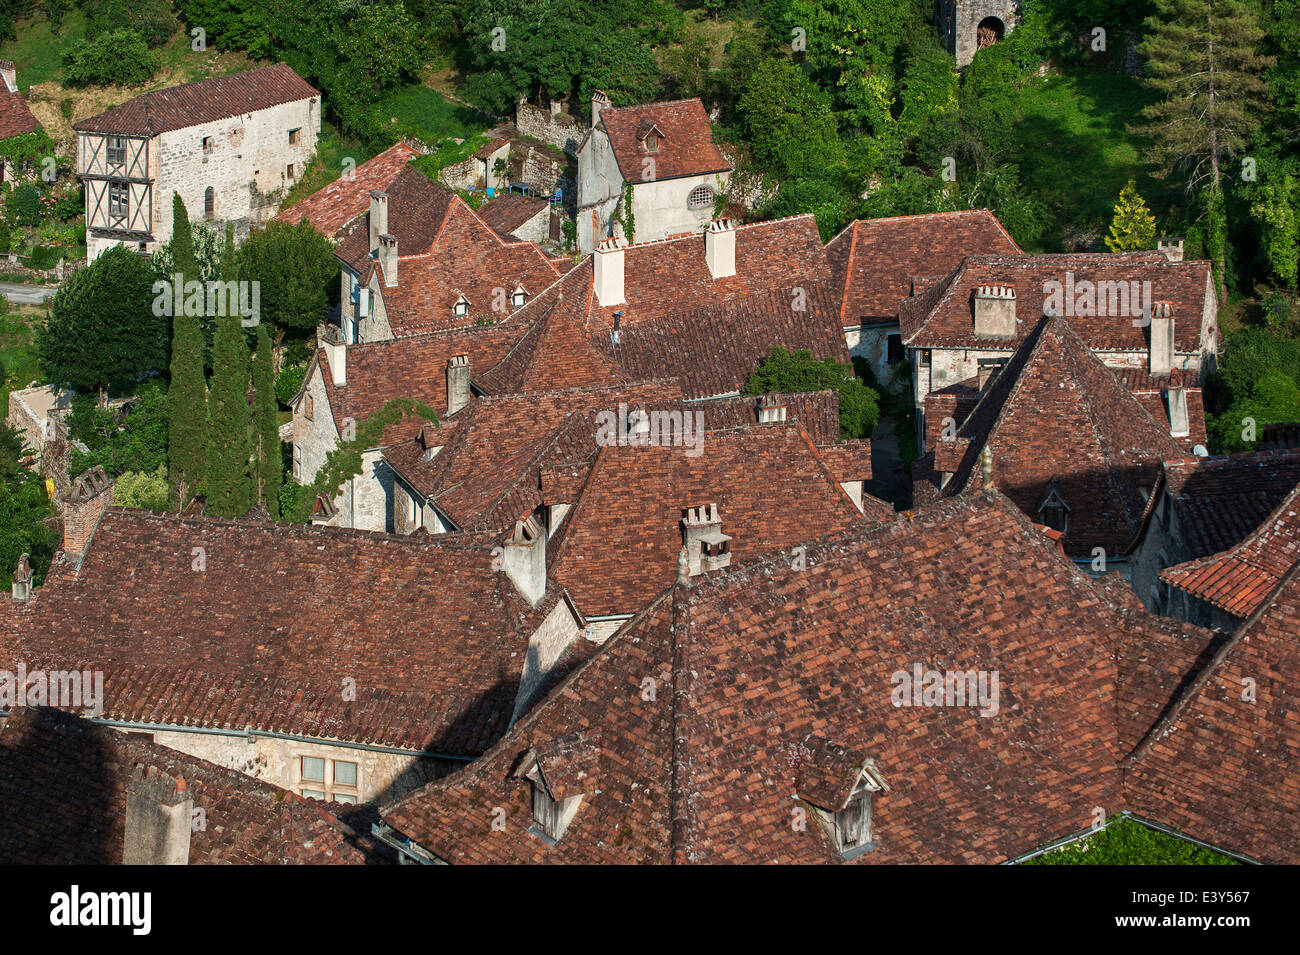 De tuiles rouges des maisons au village médiéval de Saint-Cirq-Lapopie, Lot, Midi-Pyrénées, France Banque D'Images